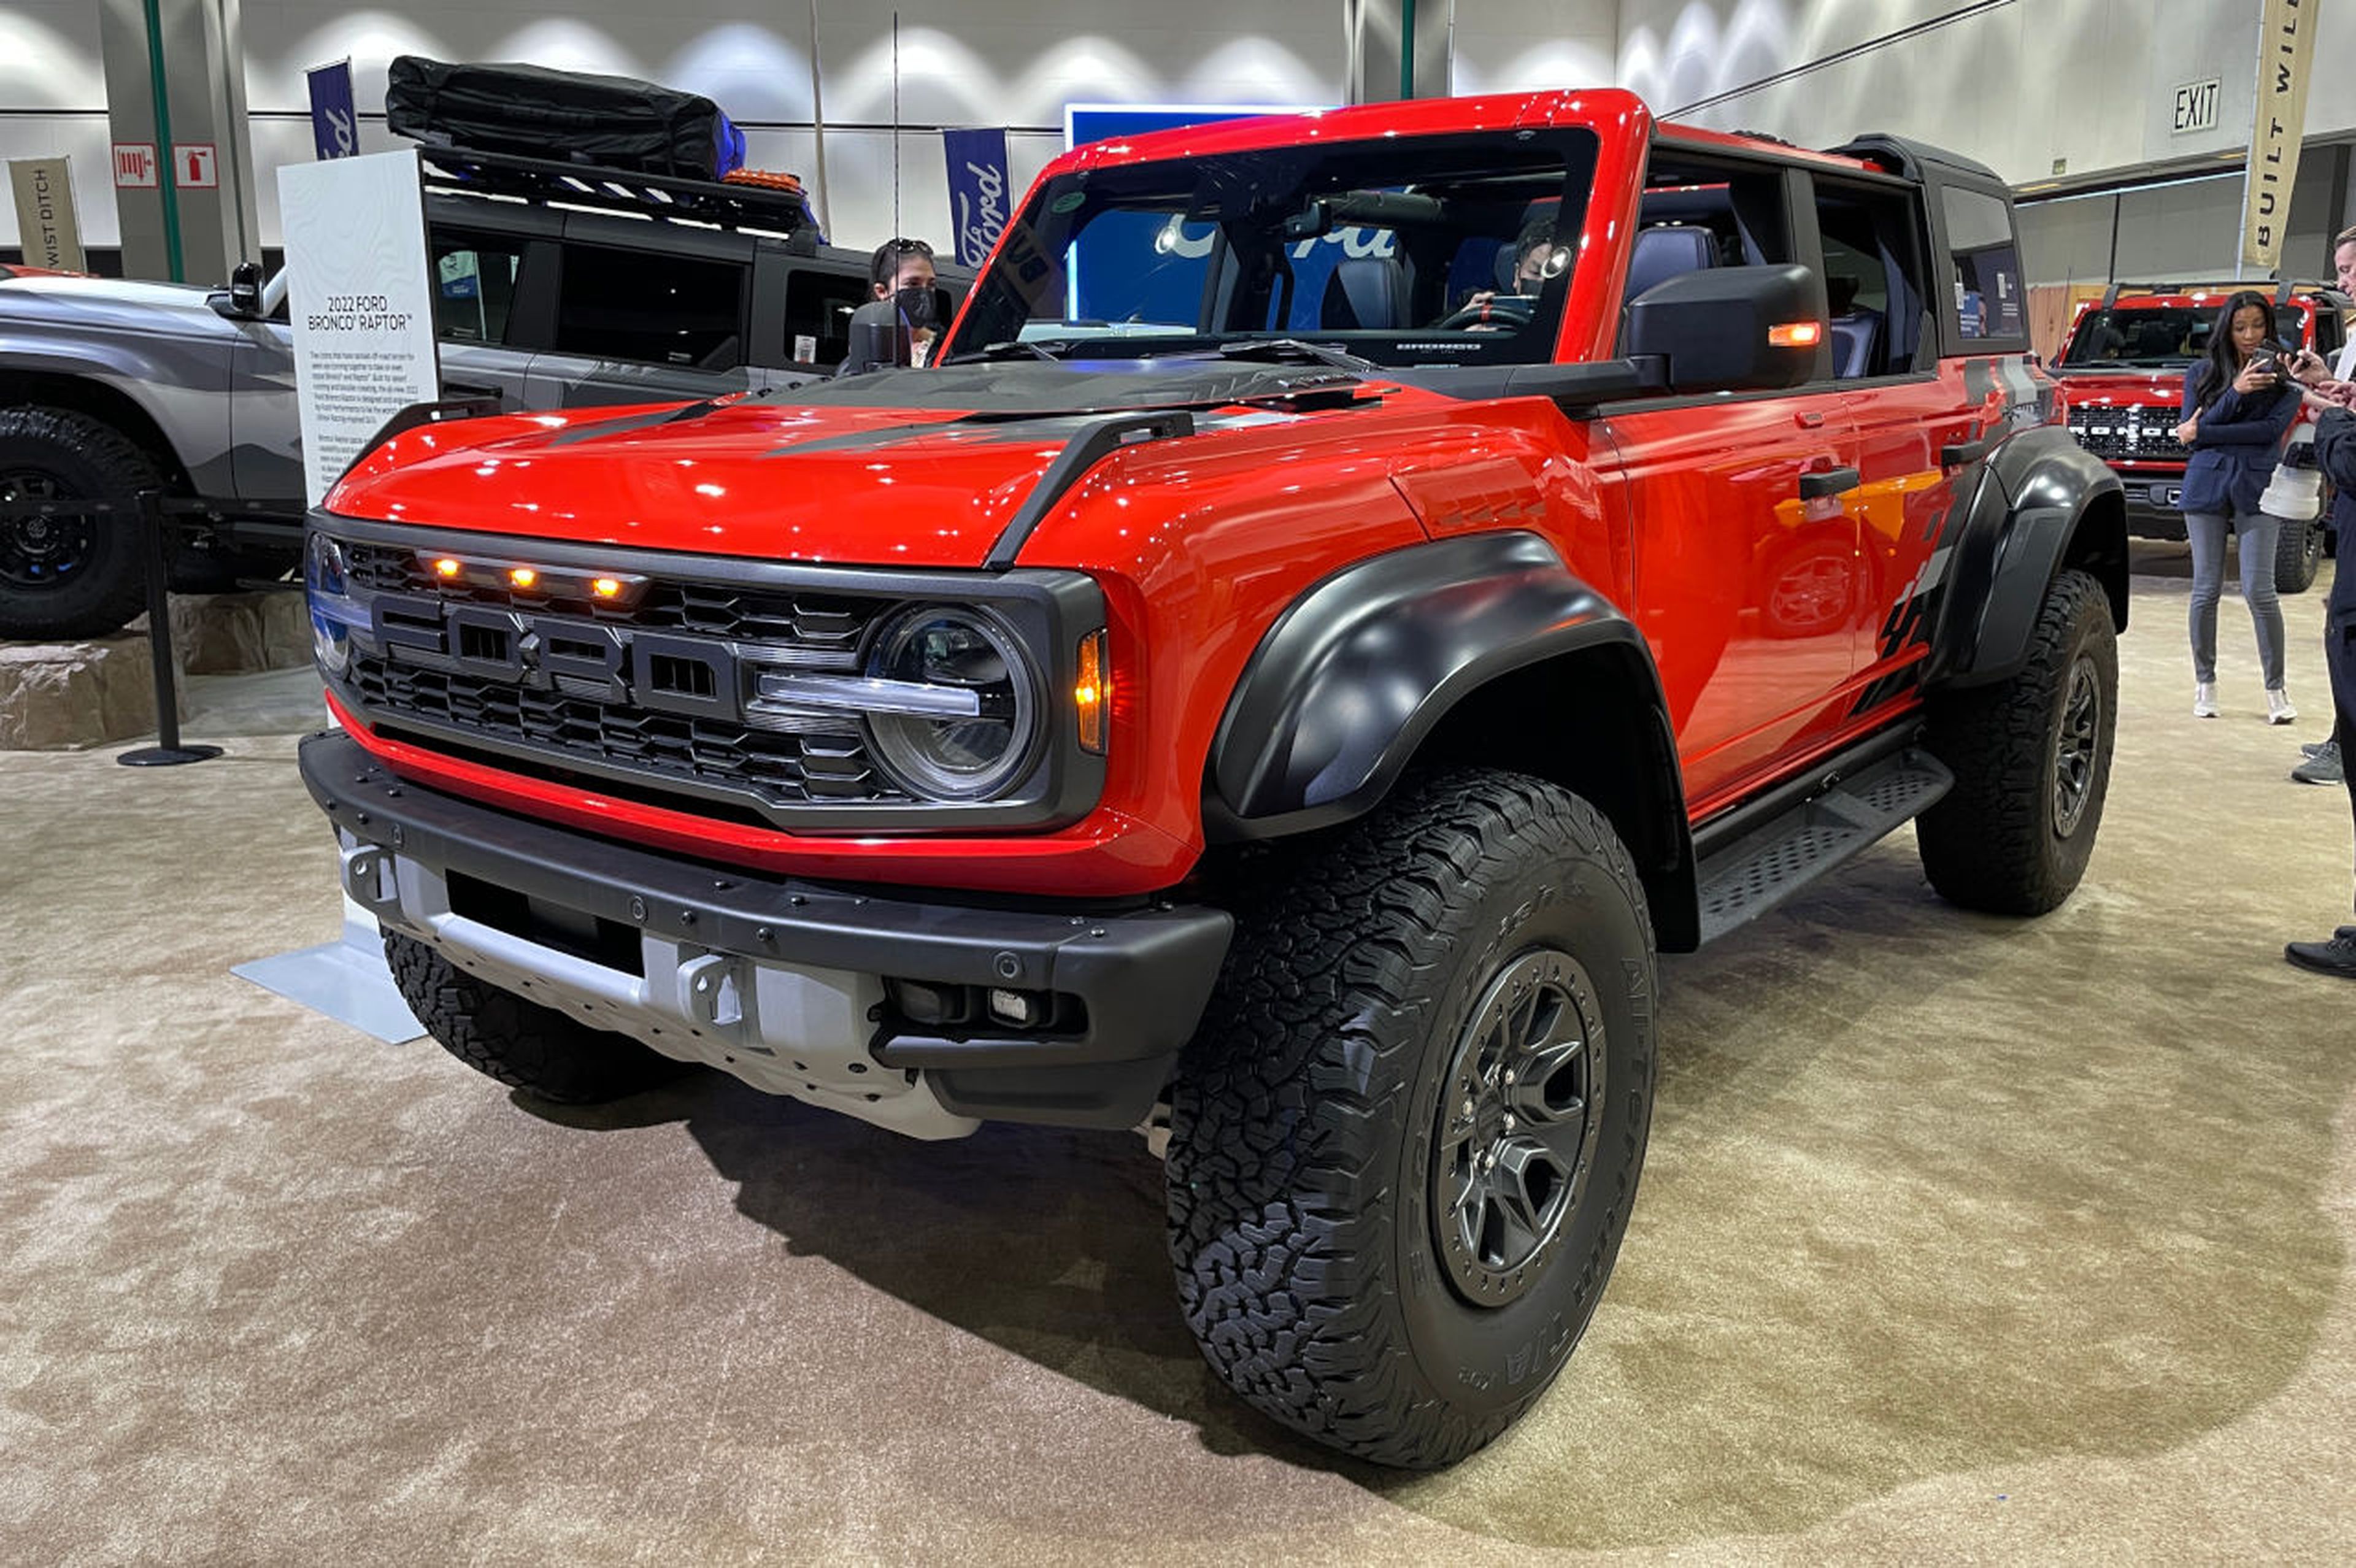 Imponente la estampa del Ford Bronco Raptor